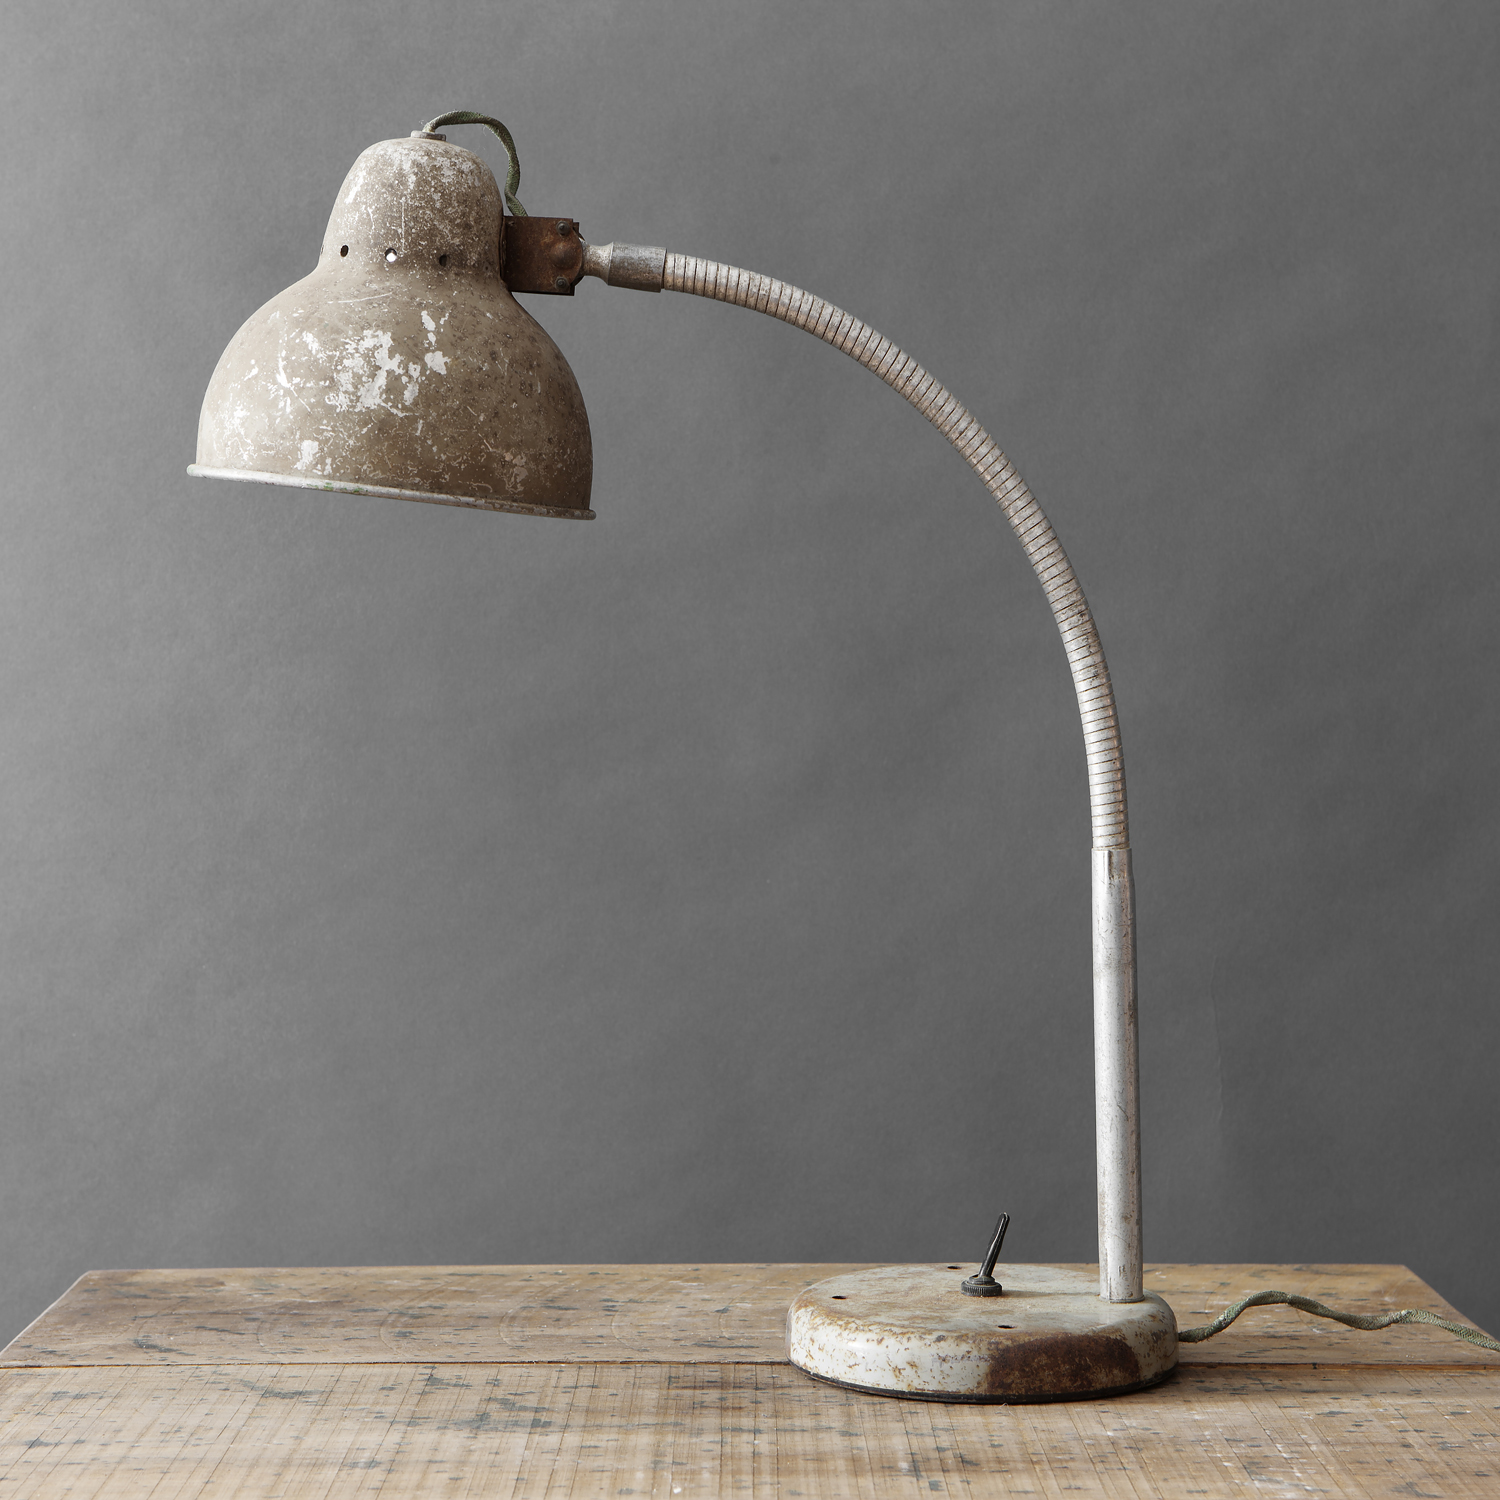 Conflict biografie tijger Industriële lamp uit de jaren 40 met mooie oude patine | Industrial lamp  from the 40s with a beautiful old patina - Lasting Living